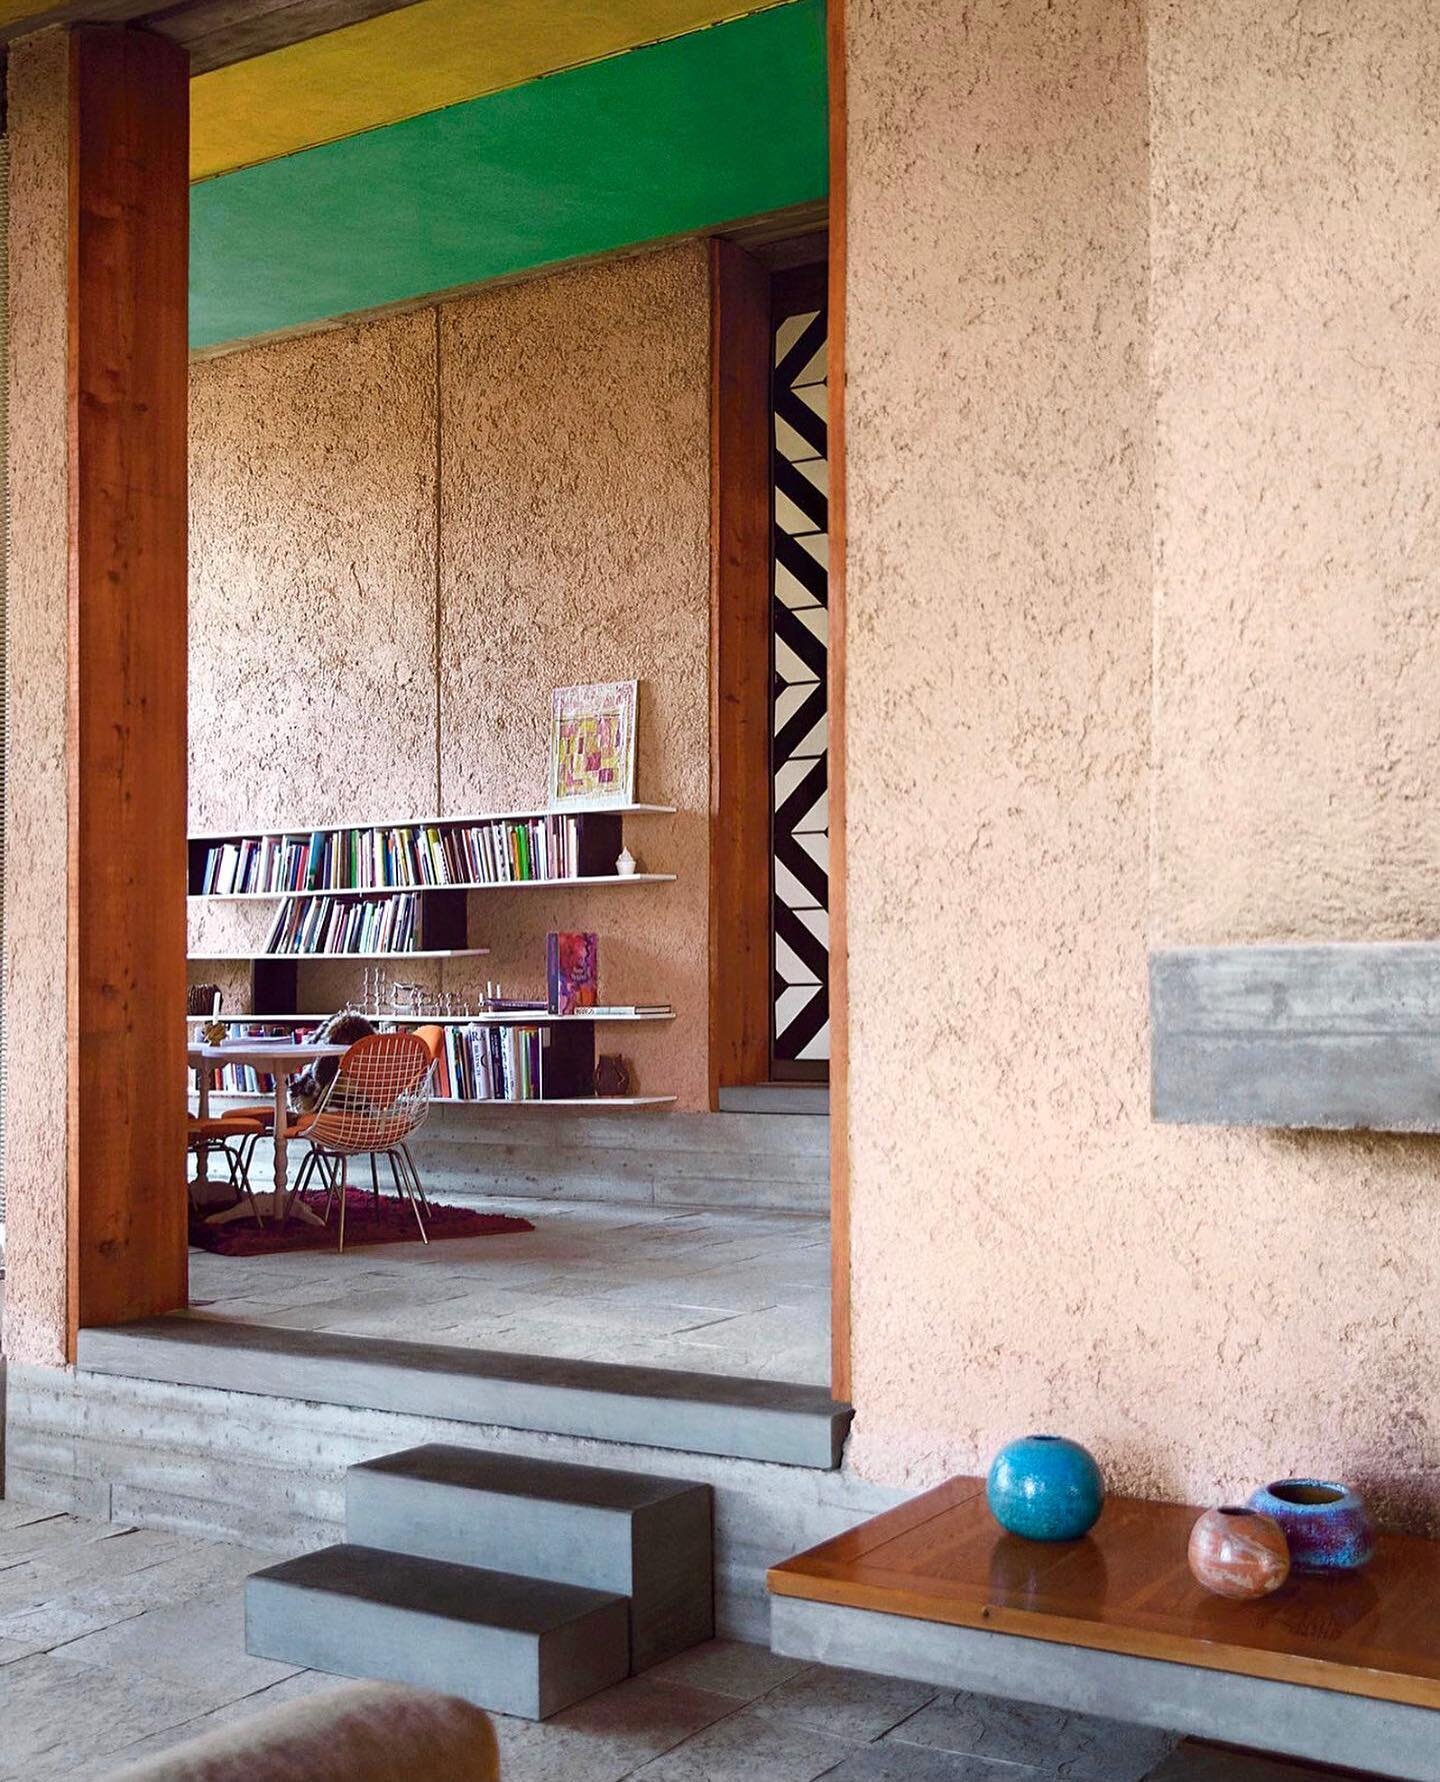 Casa Tabarelli, near Borzano, Italy / by the genius Carlo Scarpa / photo by Ilaria Orsini
.
.
.
.
.
.
.
.
#carloscarpa #casatabarelli #borzano #interior #design #home #architecture #architecturelovers #kellybehunstudio